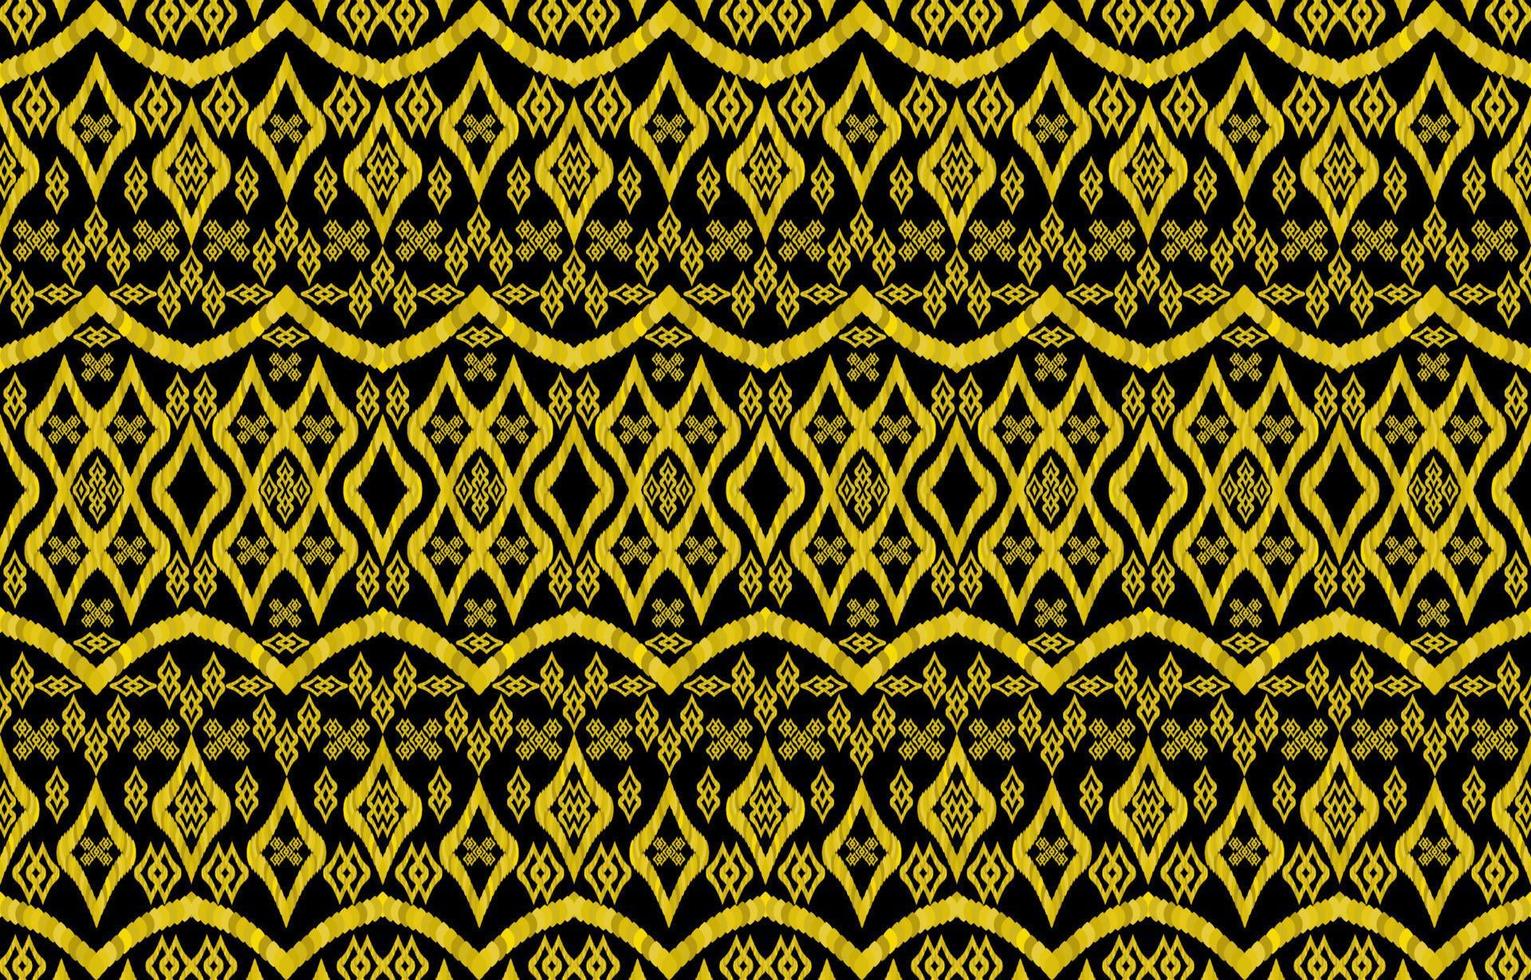 motifs ikat royaux dorés sur fond noir. style rétro vintage tribal géométrique. modèle sans couture de tissu ethnique ikat. vecteur d'impression indien navajo aztèque ikat. conception pour le textile de texture de toile de fond.